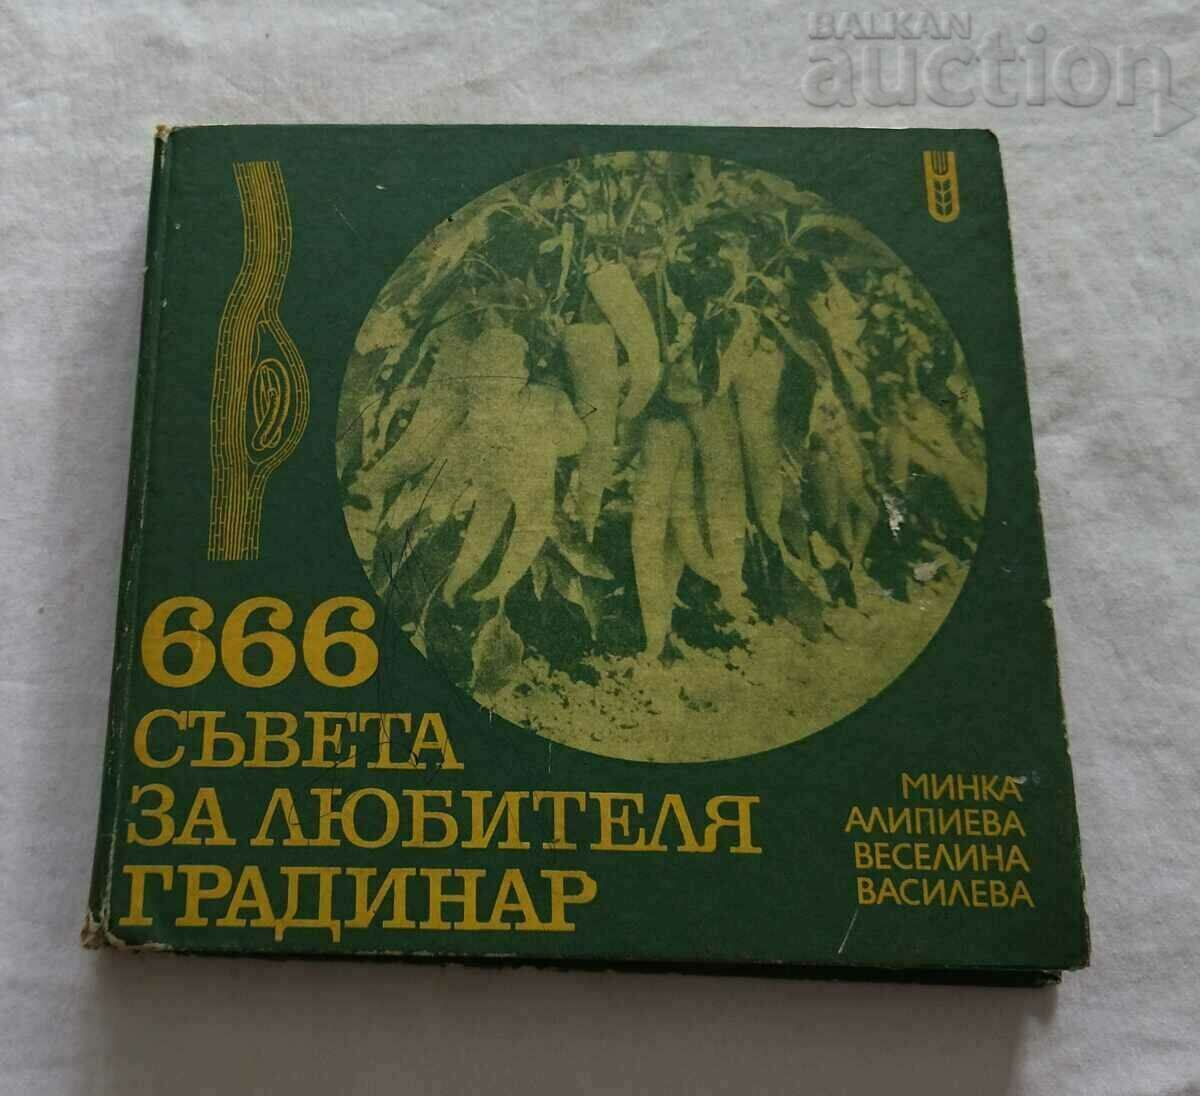 666 ΣΥΜΒΟΥΛΕΣ ΓΙΑ ΤΟΝ ΚΗΠΟΥΡΟ AMP του 1979.